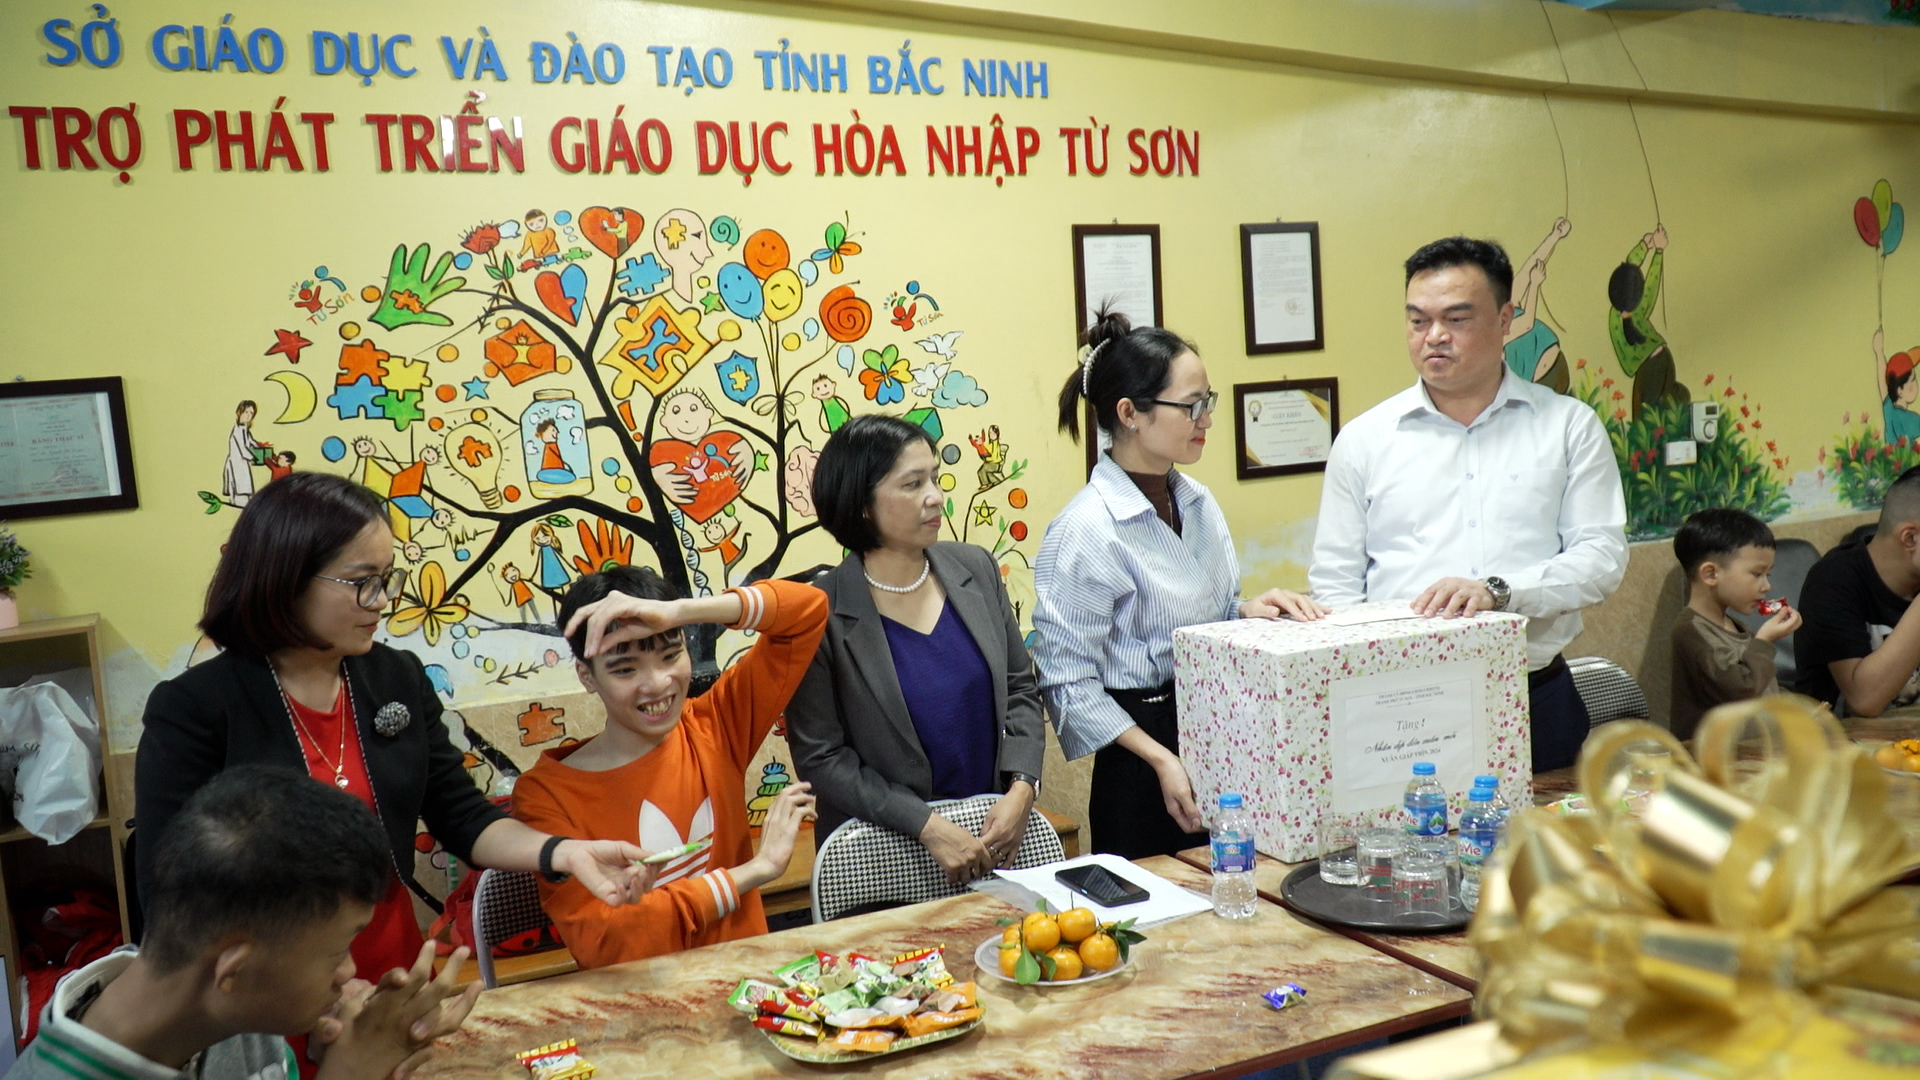 Lãnh đạo thành phố tặng quà trung tâm hỗ trợ phát triển giáo dục hòa nhậm Từ Sơn nhân dịp Tết Cổ truyền